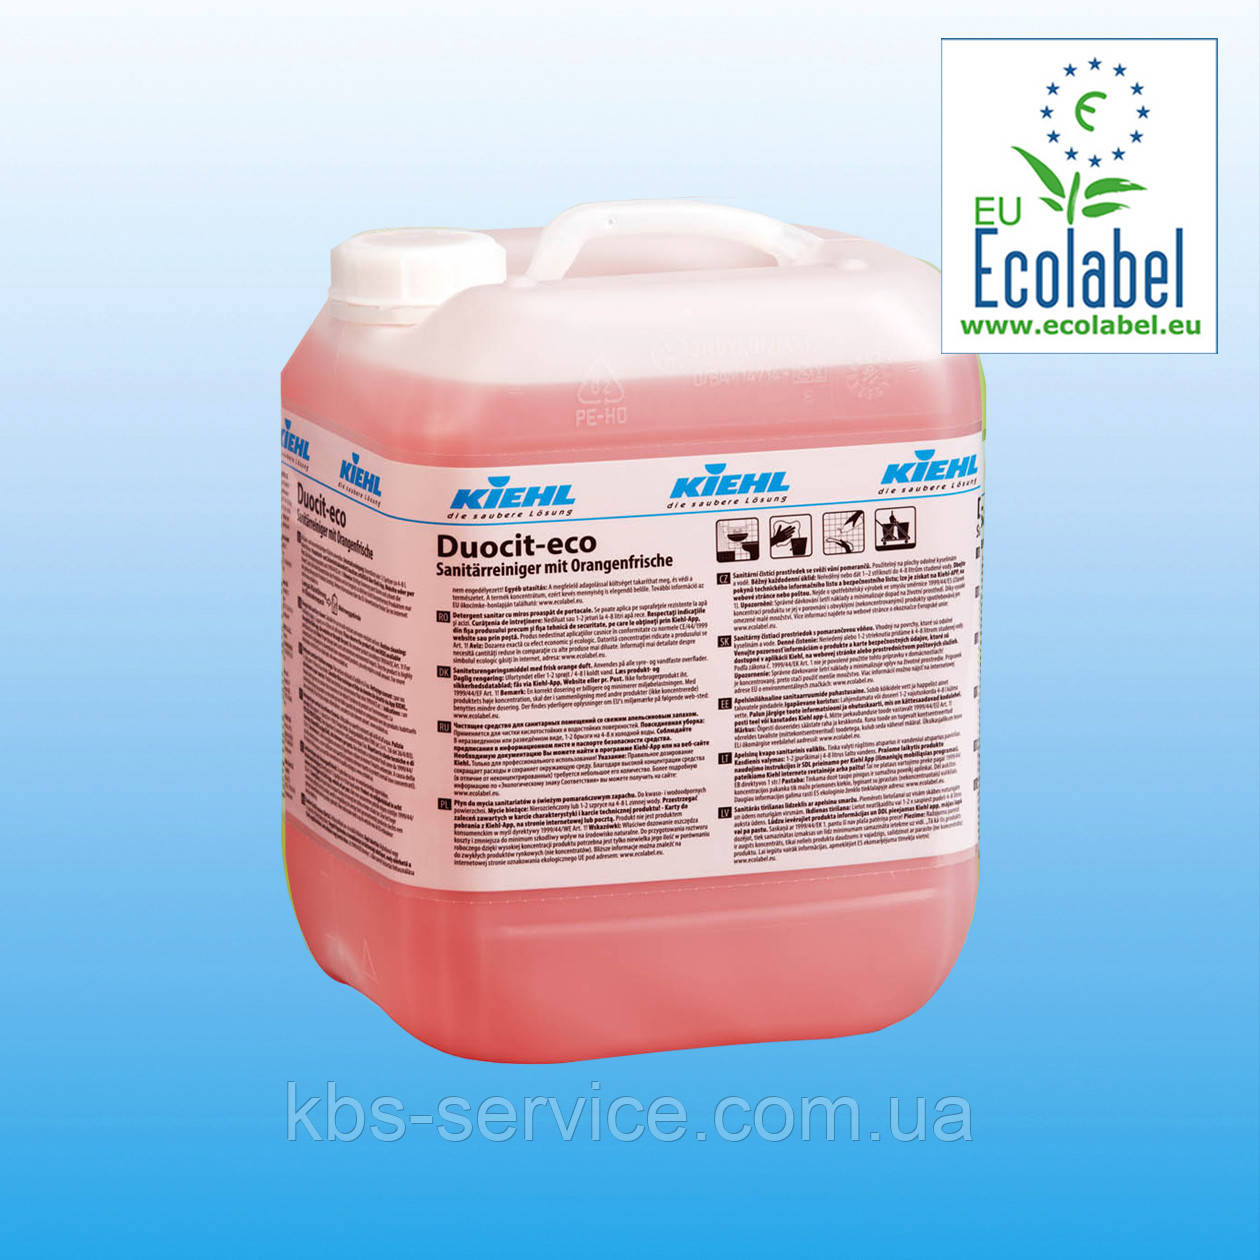 Засіб для прибирання санітарних приміщень зі свіжим апельсиновим запахом Duocit-eco, 10 л,  Kiehl